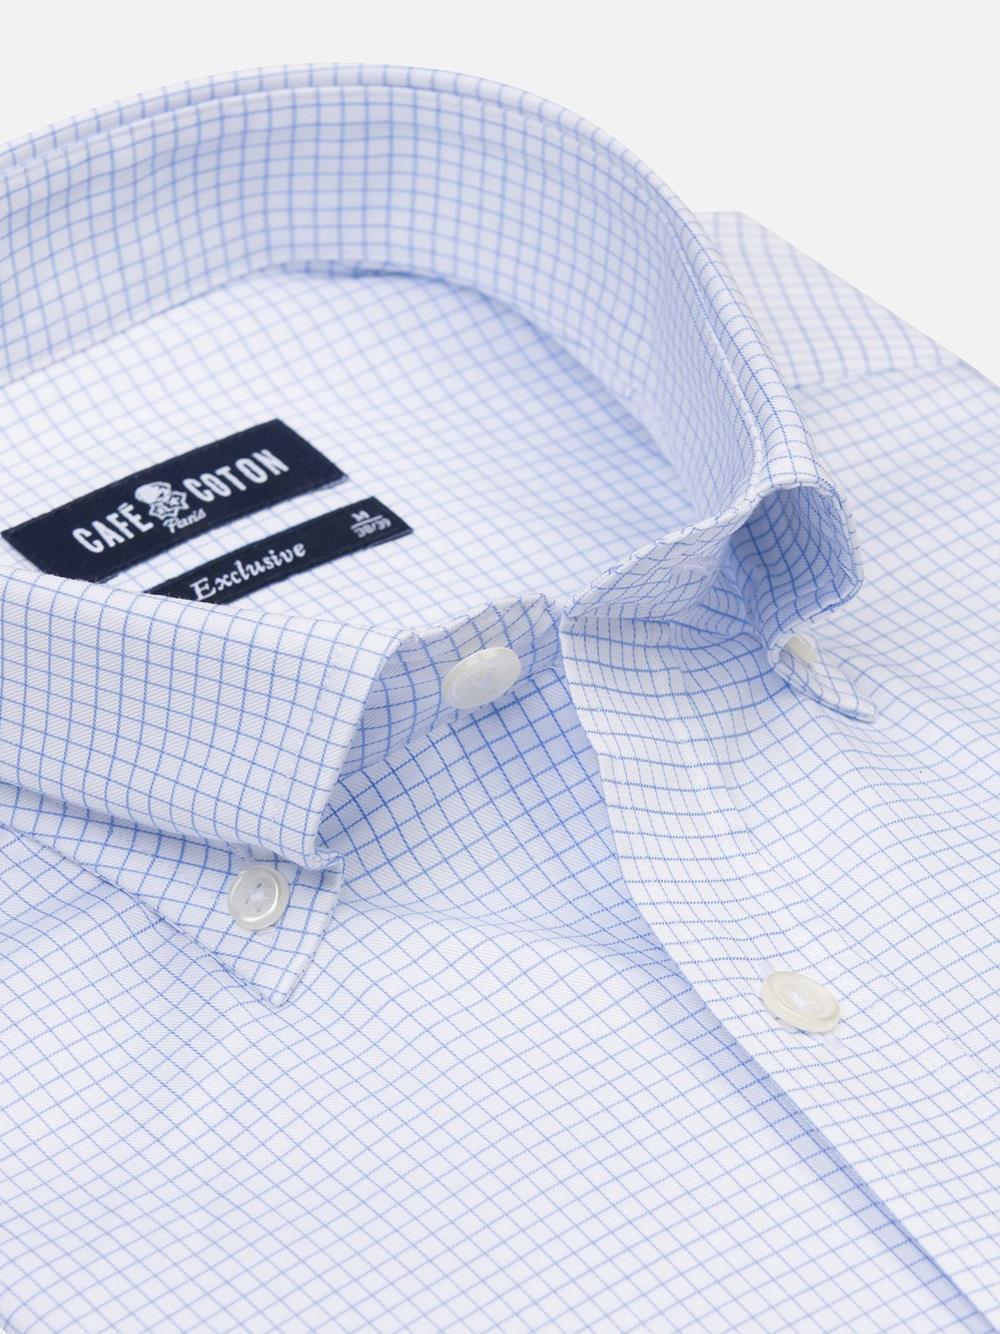 Gill sky blue checked shirt - Button-down collar